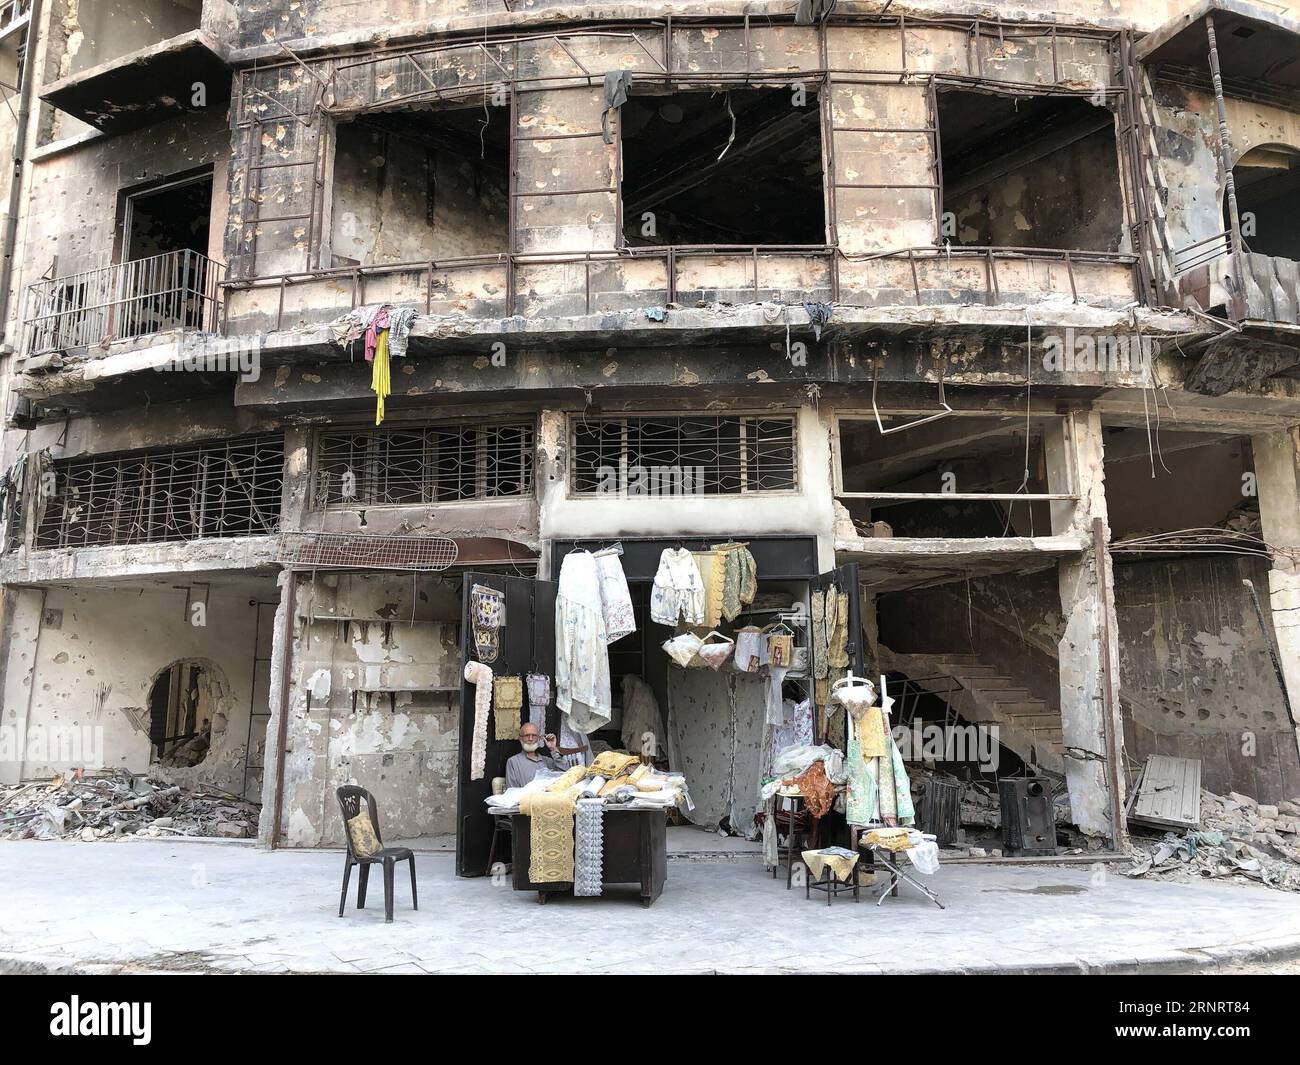 (171014) -- ALEPPO, 14. Oktober 2017 -- Abu Subhi sitzt am 12. Oktober 2017 vor seinem Geschäft in Aleppo, Syrien. In den Ruinen der historischsten Souks der Welt betreibt der 62-jährige Abu Subhi ein sehr kleines Geschäft in der Khan al-Harir-Straße in der alten Stadt Aleppo, umgeben von der Zerstörung des Krieges. Sein kleines Geschäft, in dem er Tischläufer und Tischdecken verkauft, ist das einzige Zeichen des Lebens in der Jahrhunderte alten Gegend.) SYRIEN-ALEPPO-ALTER KAUFMANN HummamxSheikhxAli PUBLICATIONxNOTxINxCHN Stockfoto